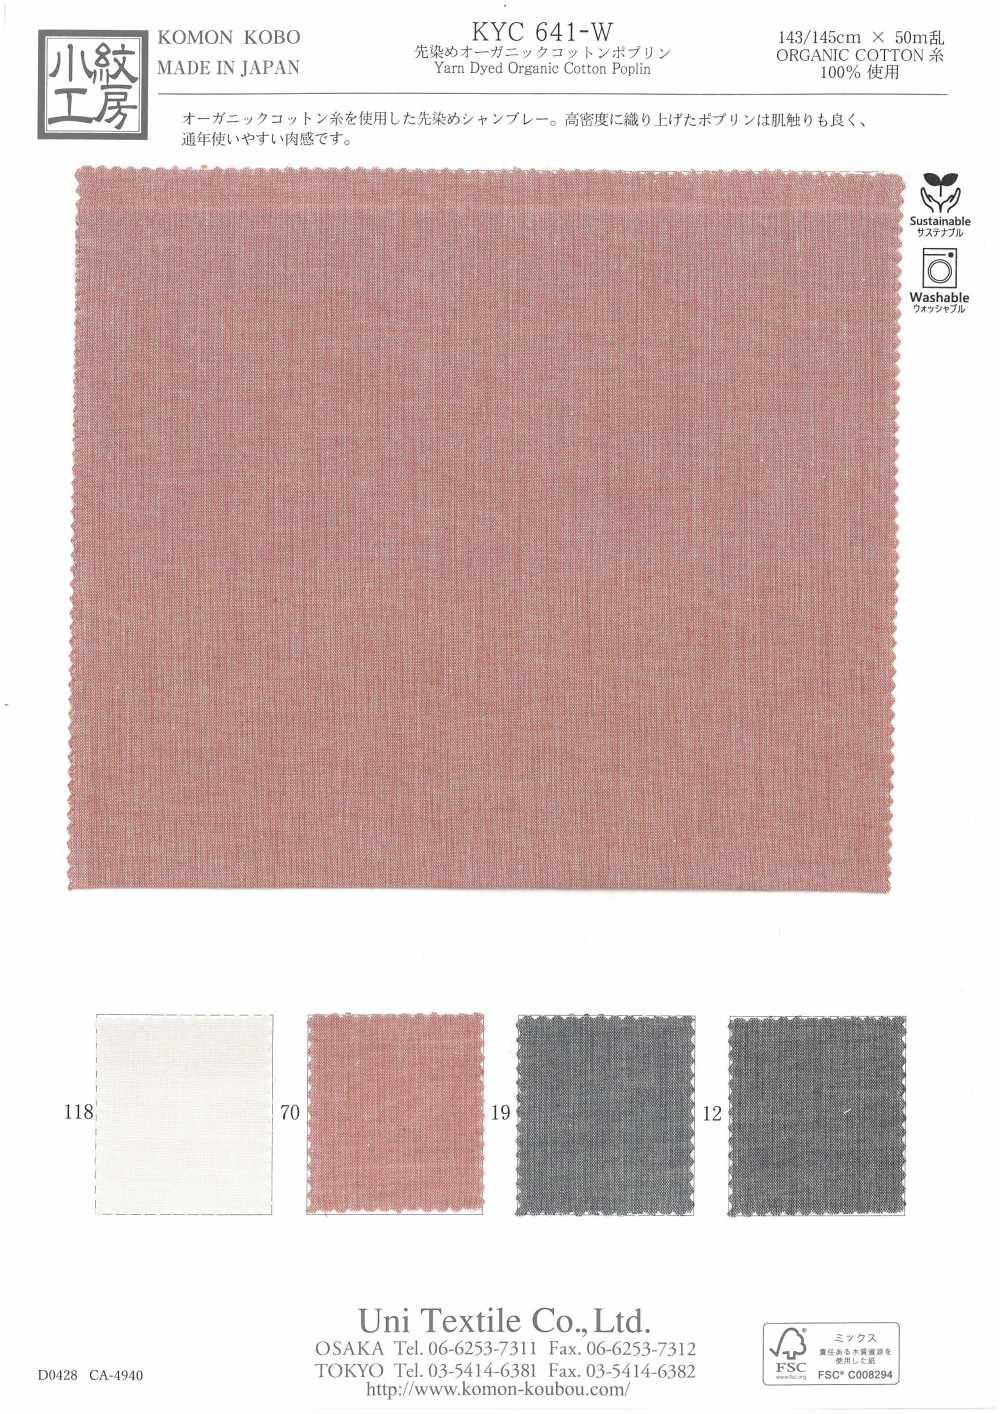 KYC641-W Popeline De Coton Biologique Teint En Fil[Fabrication De Textile] Uni Textile